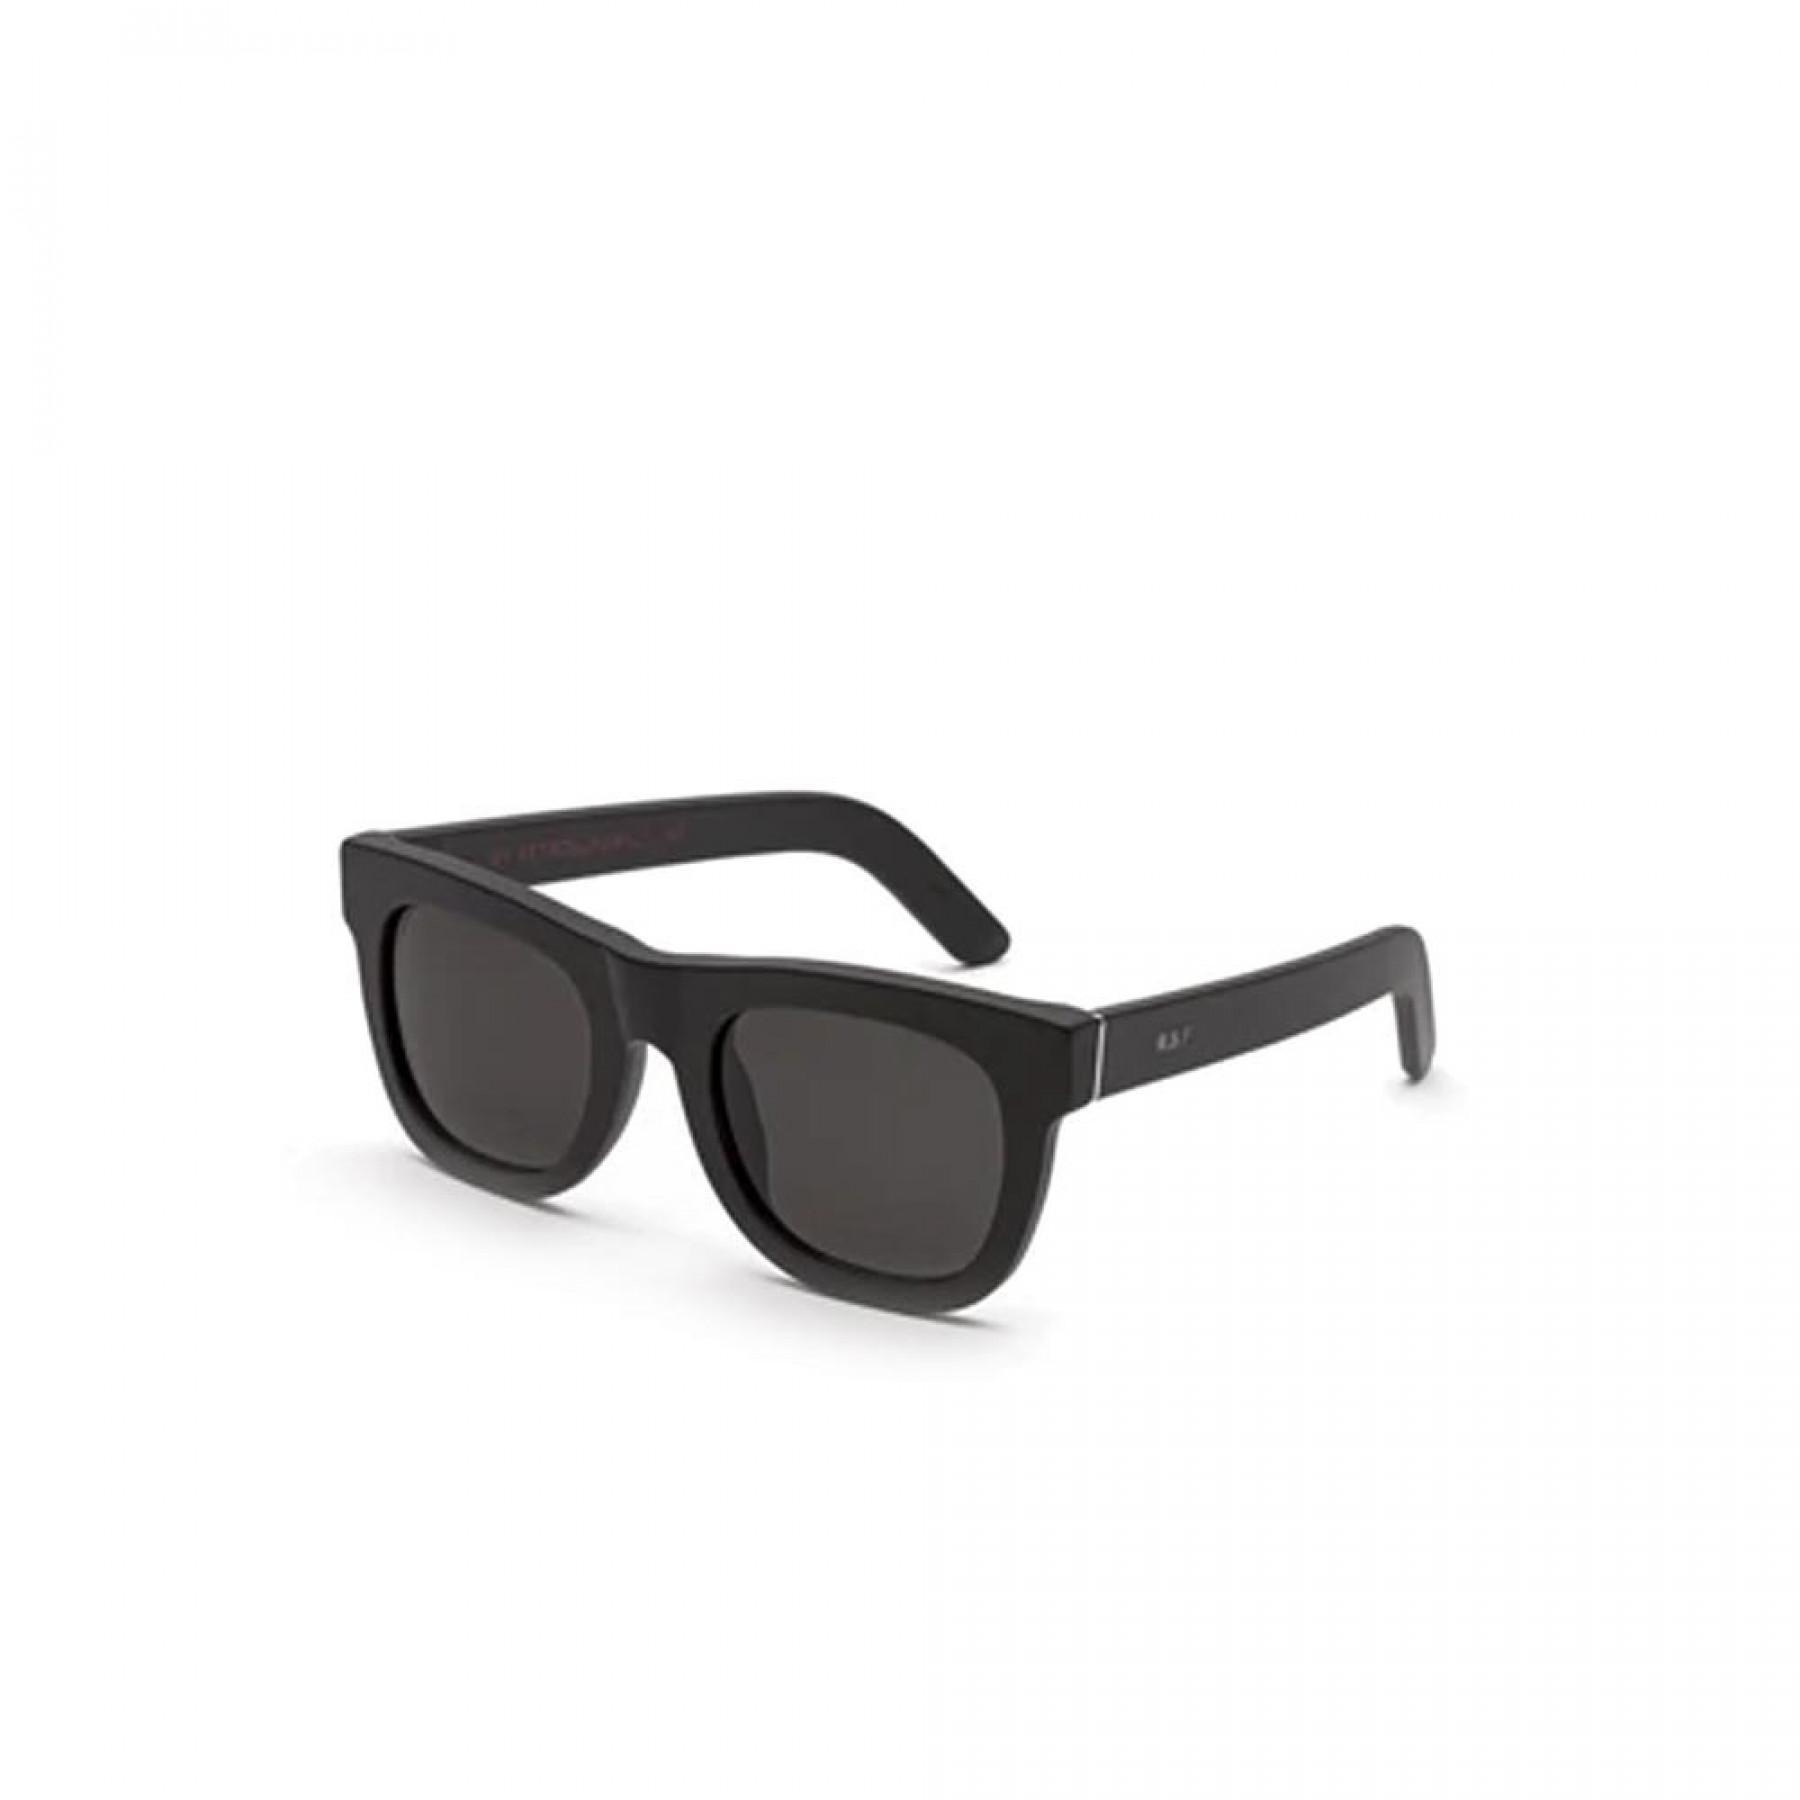 Sunglasses Retrosuperfuture Ciccio Black Matte